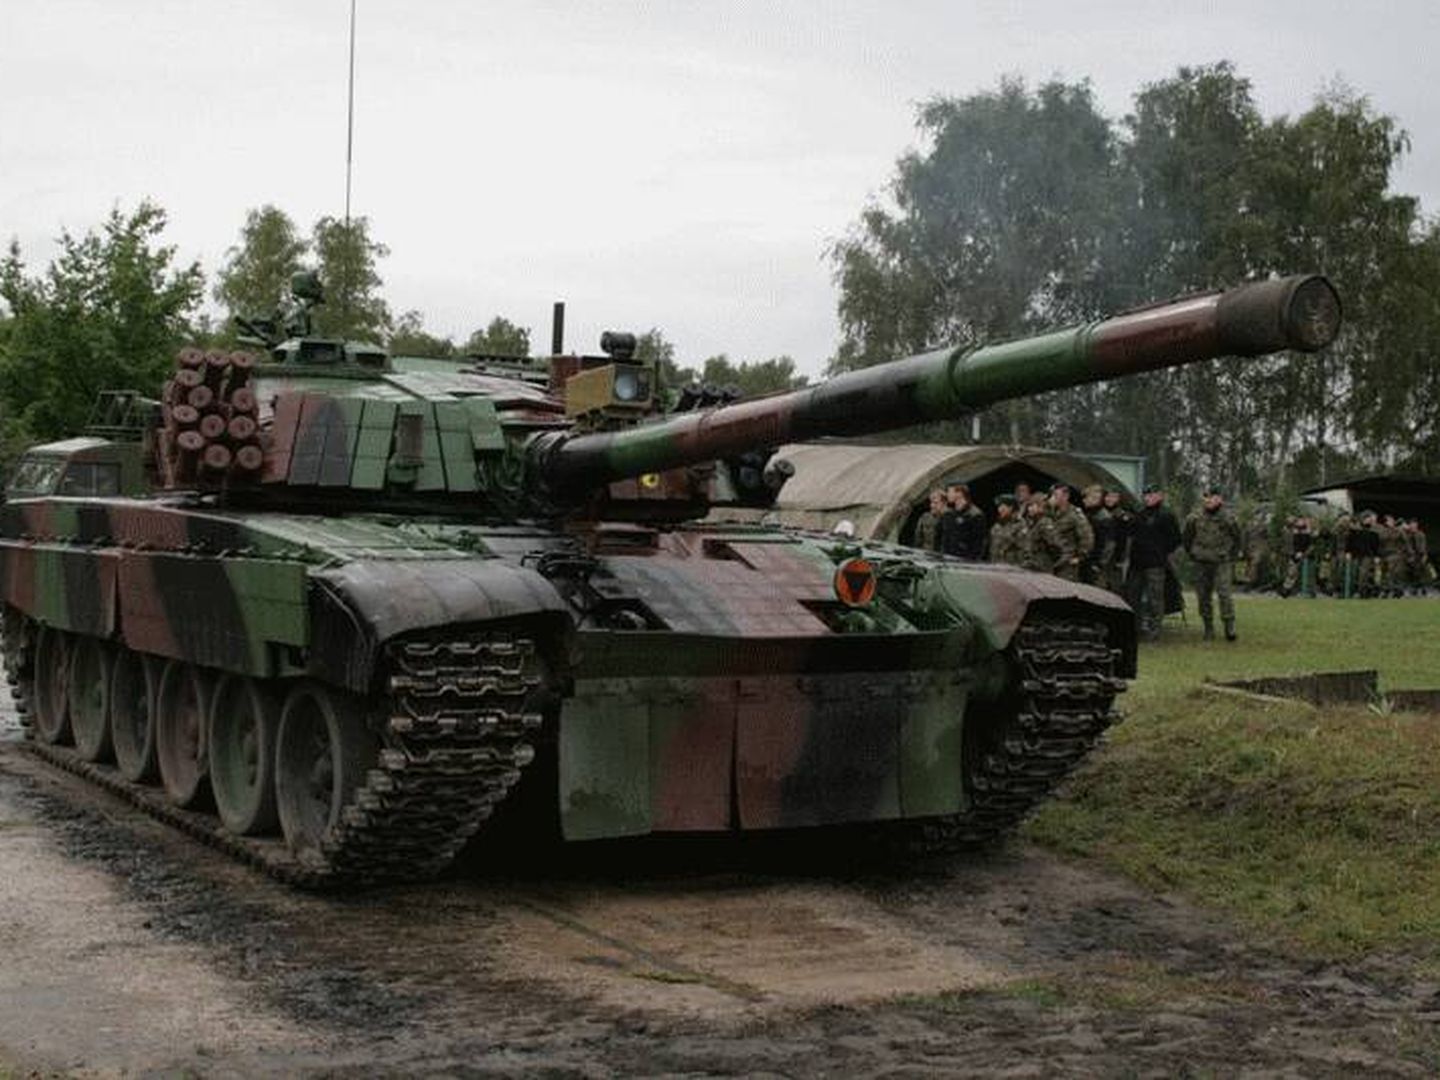 Uno de los modelos de carro de combate de fabricación polaca que vendía Dadak. (Policía Nacional)